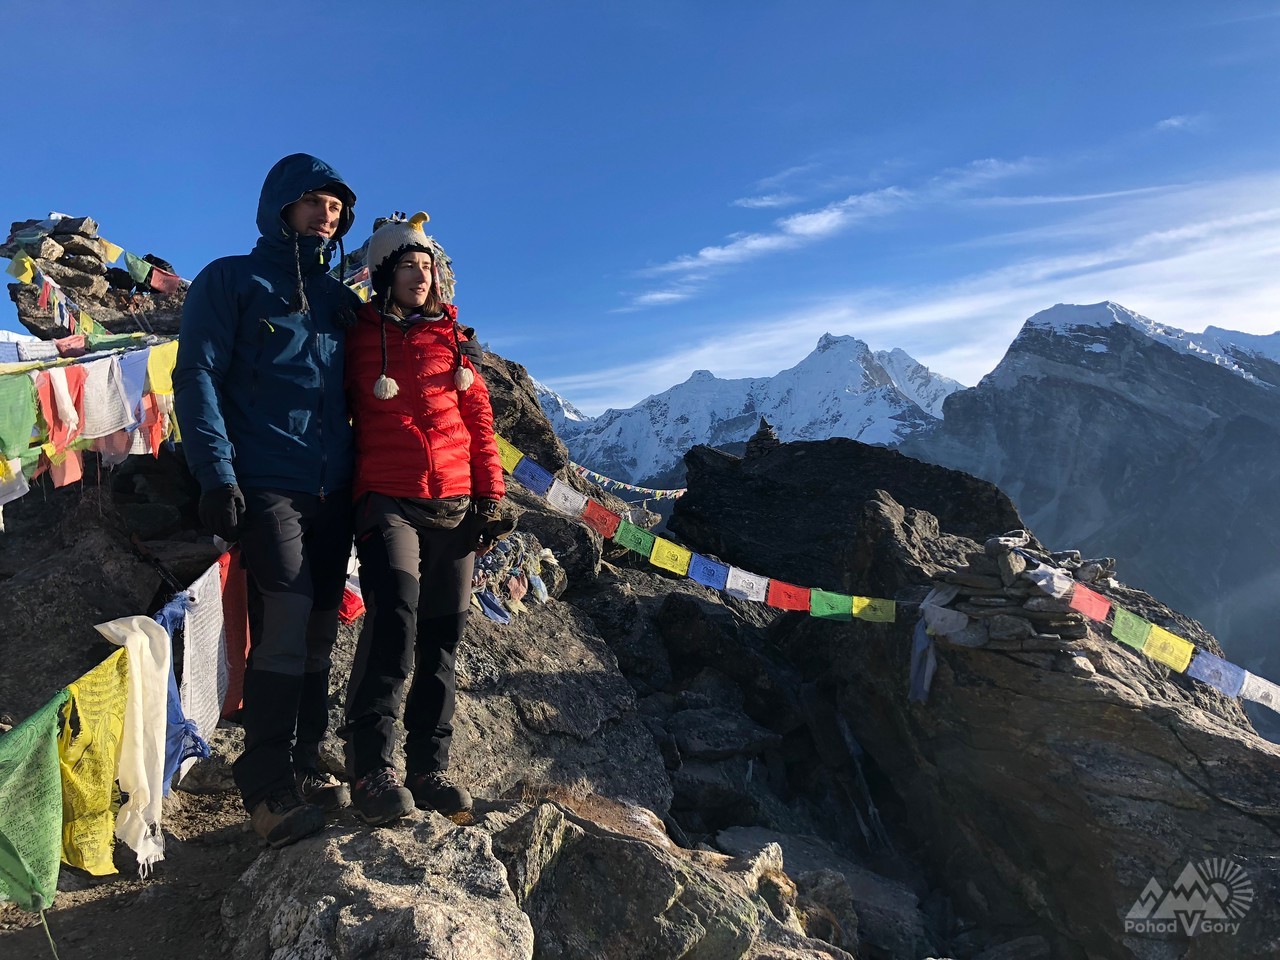 Видео-дневник из похода к базовому лагерю Эвереста, осень 2018